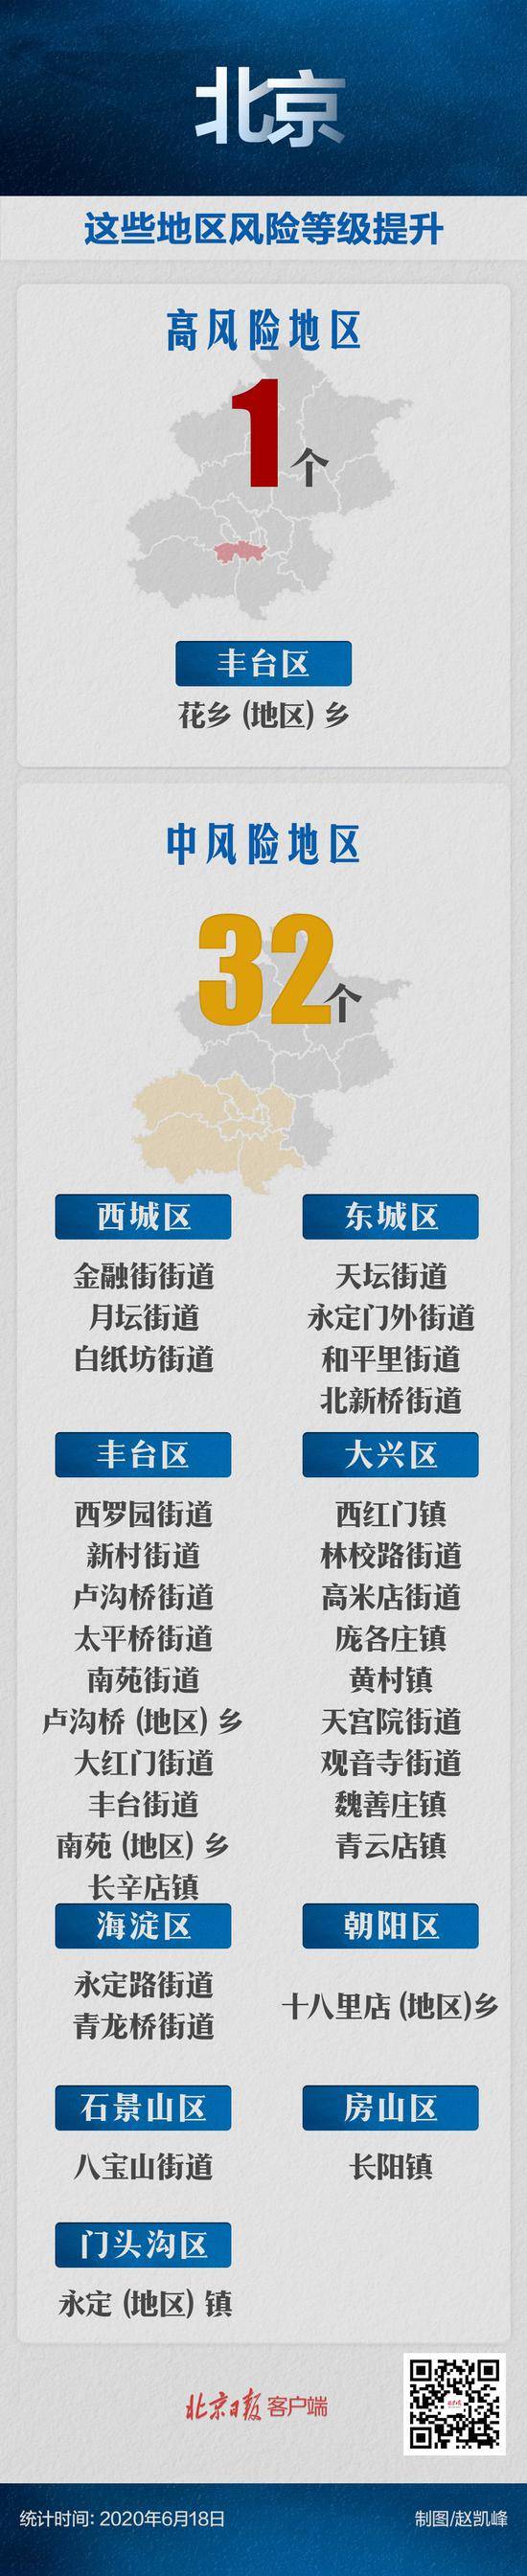 北京中高风险地区总数无新增，丰台长辛店街道降为低风险地区